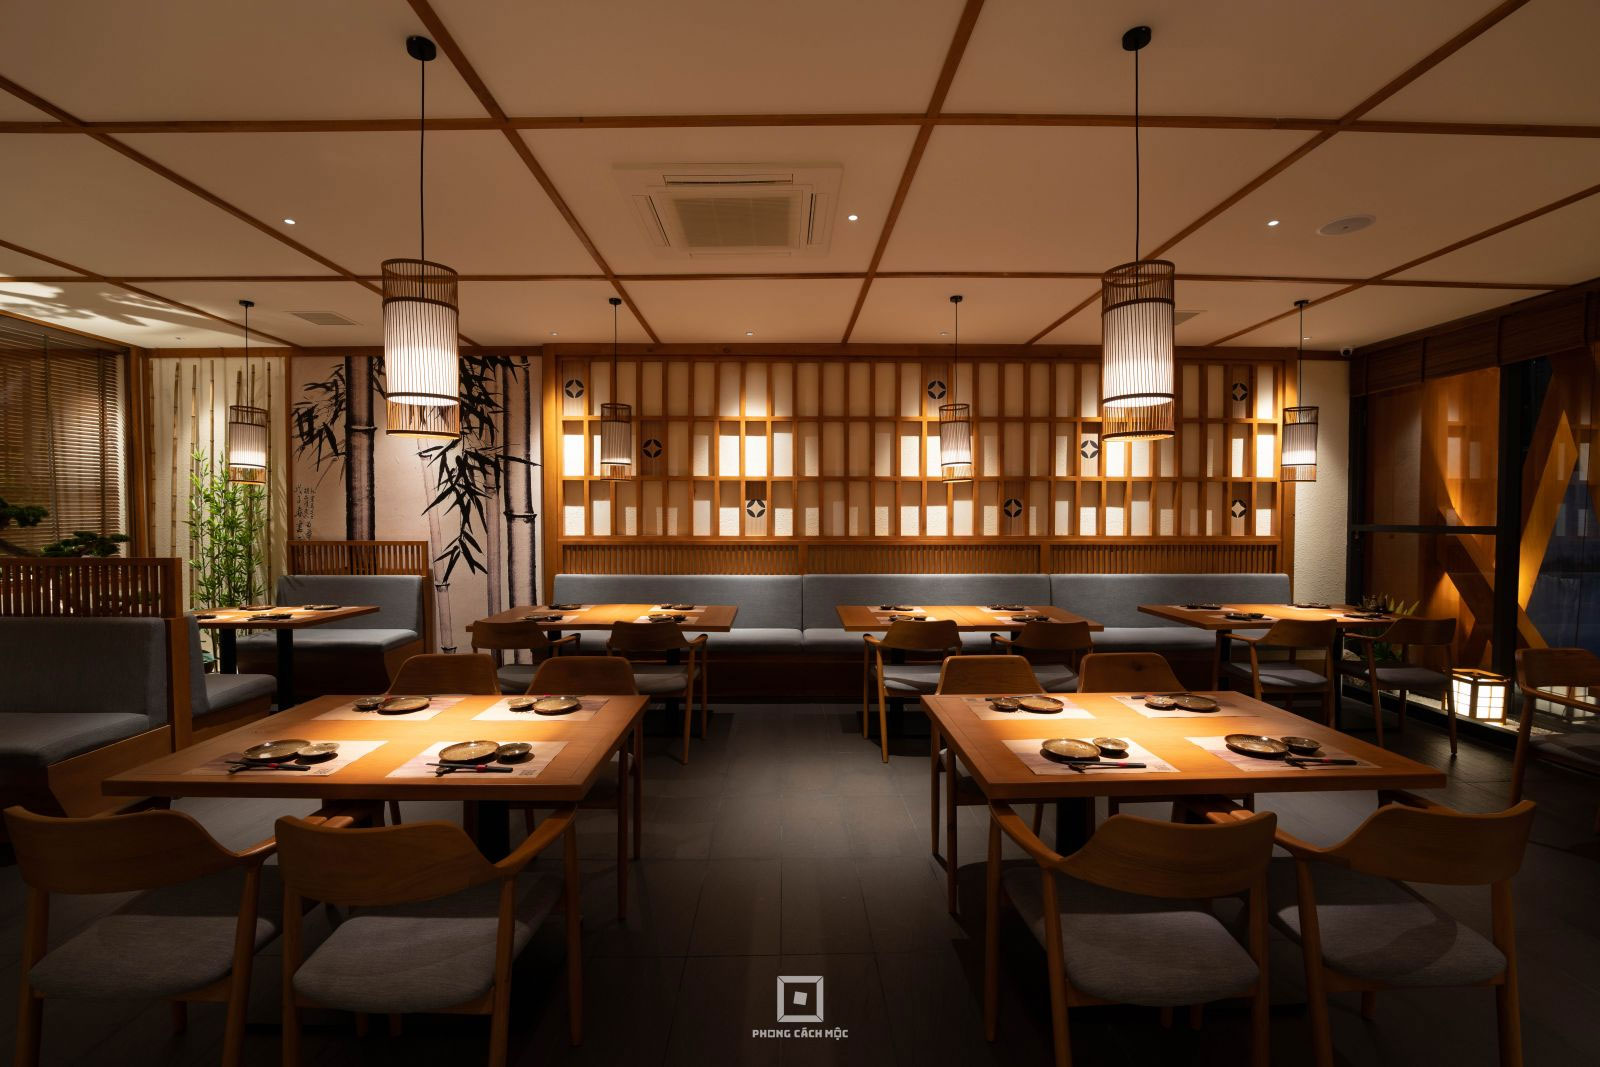 Yếu tố văn hóa ảnh hưởng đến thiết kế nội thất nhà hàng Nhật